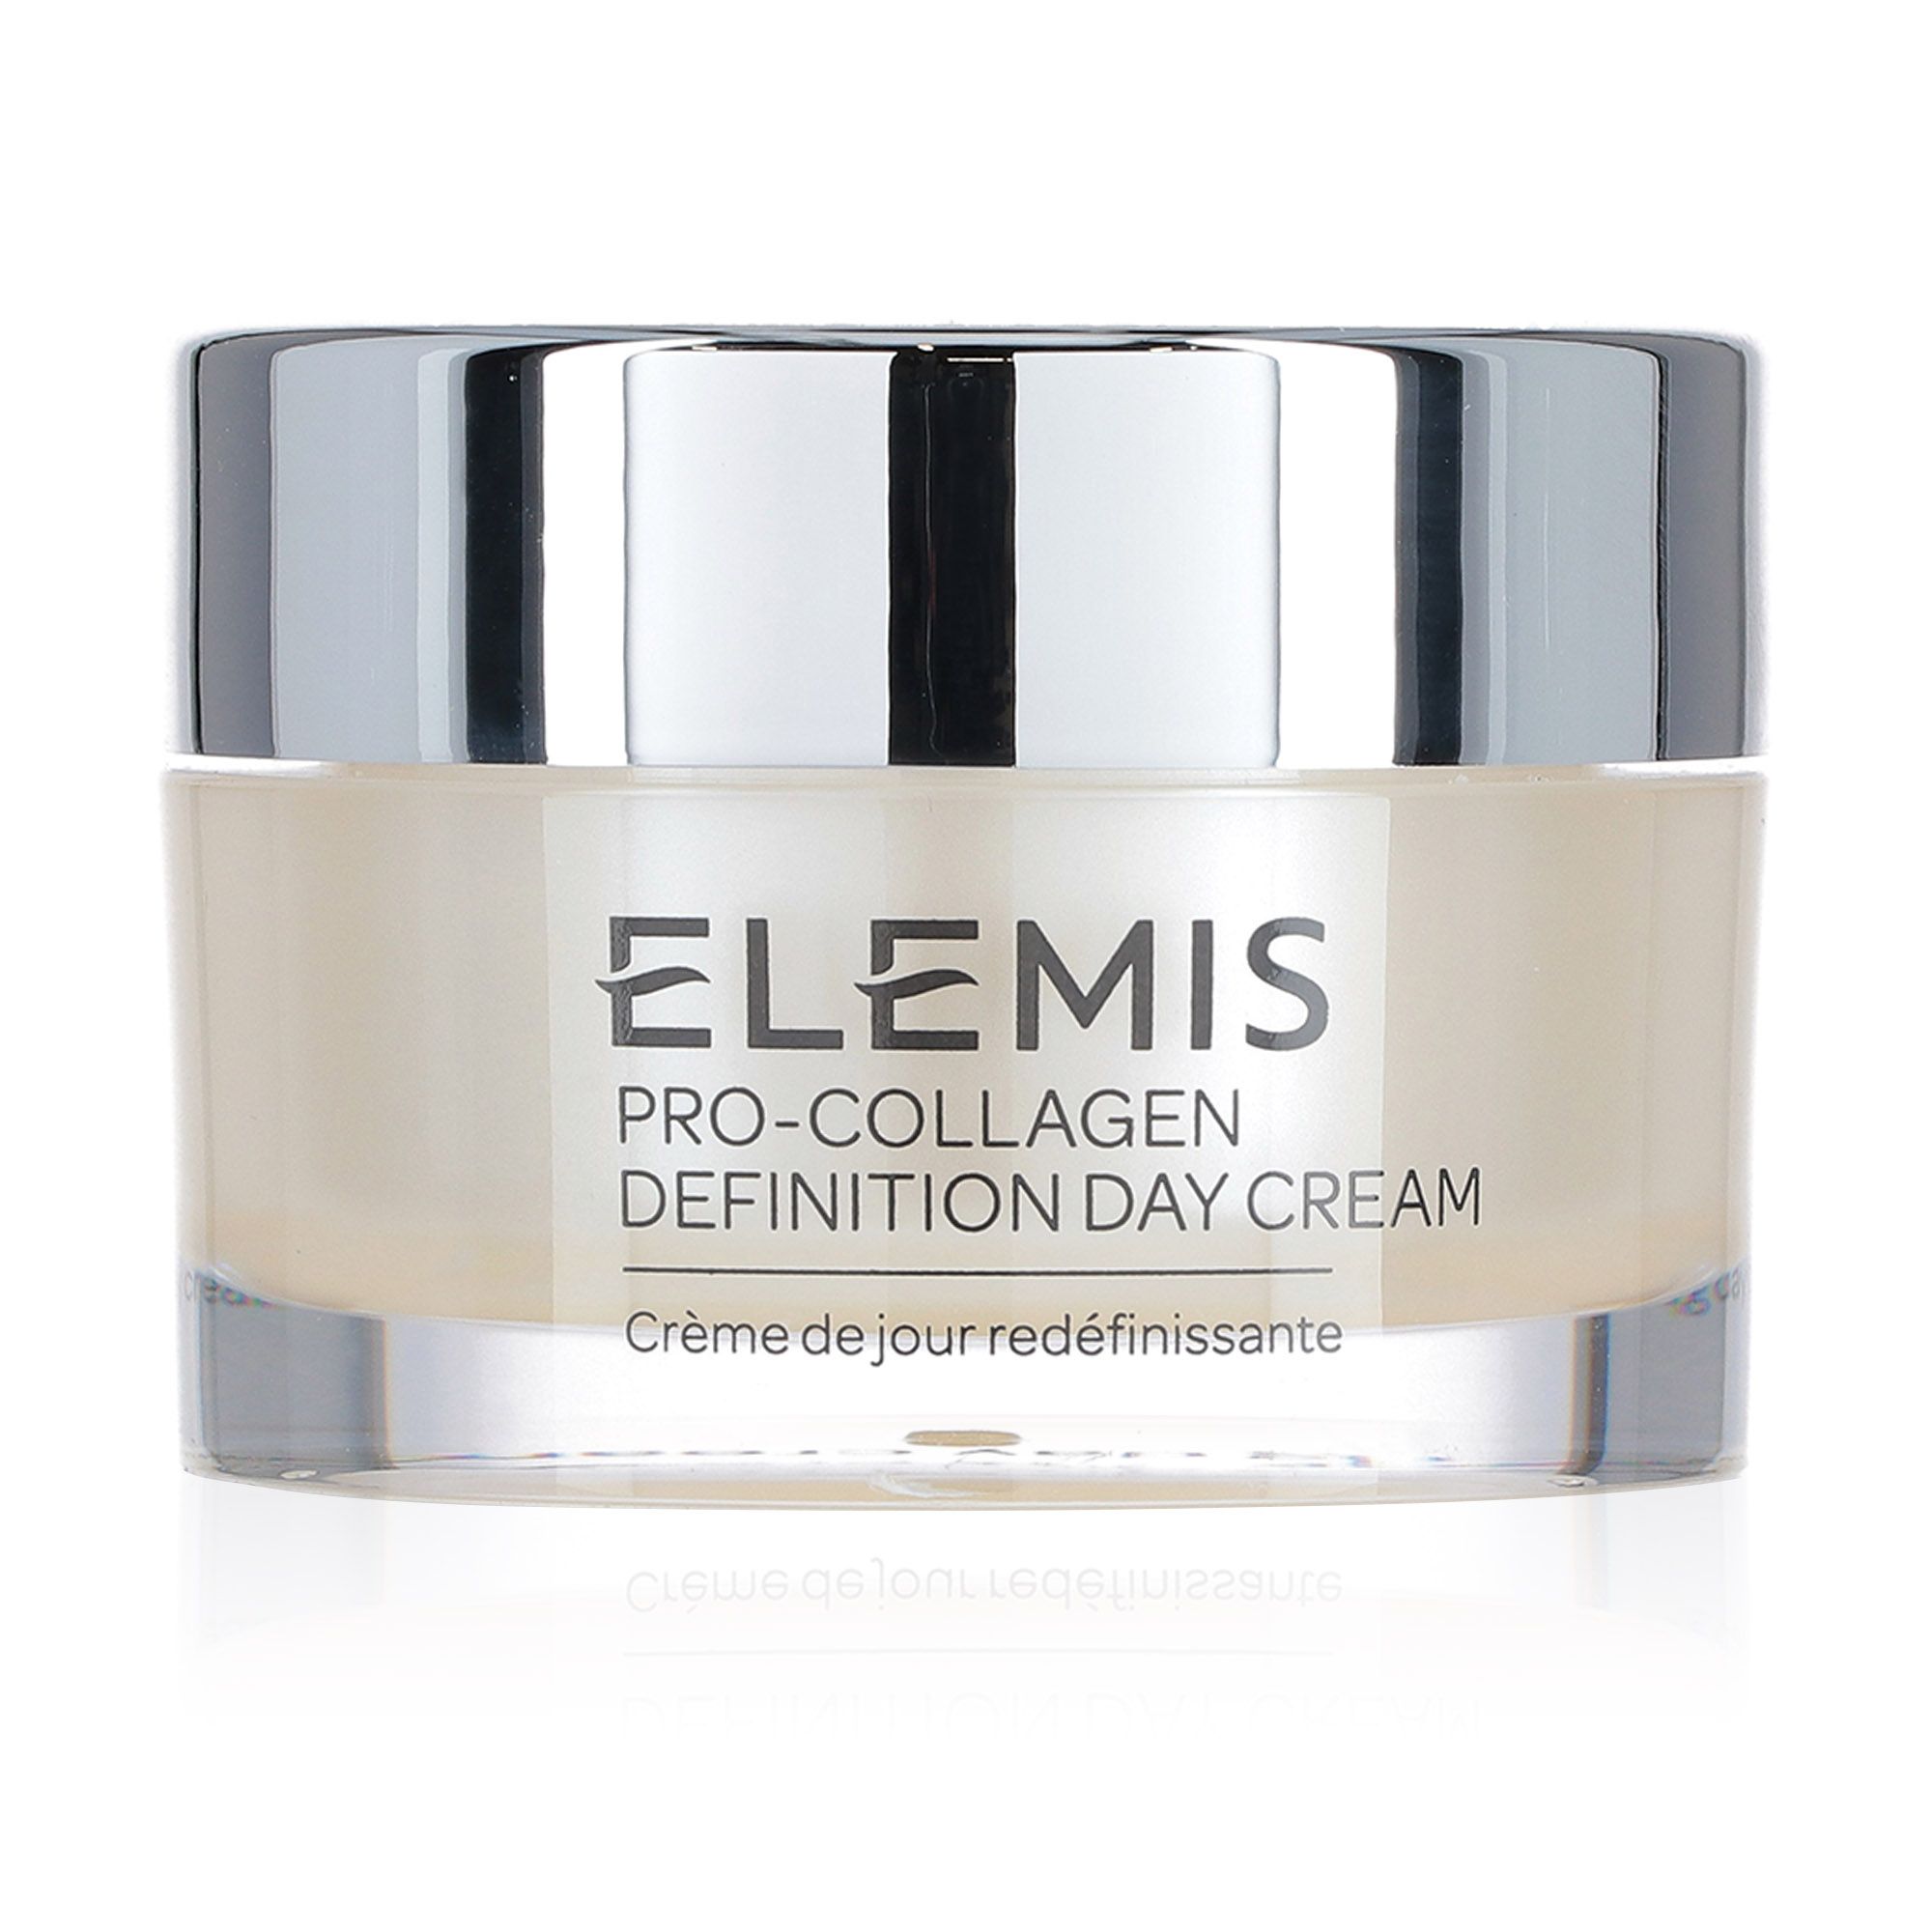 Pro-Collagen Definition Day Cream, crema giorno